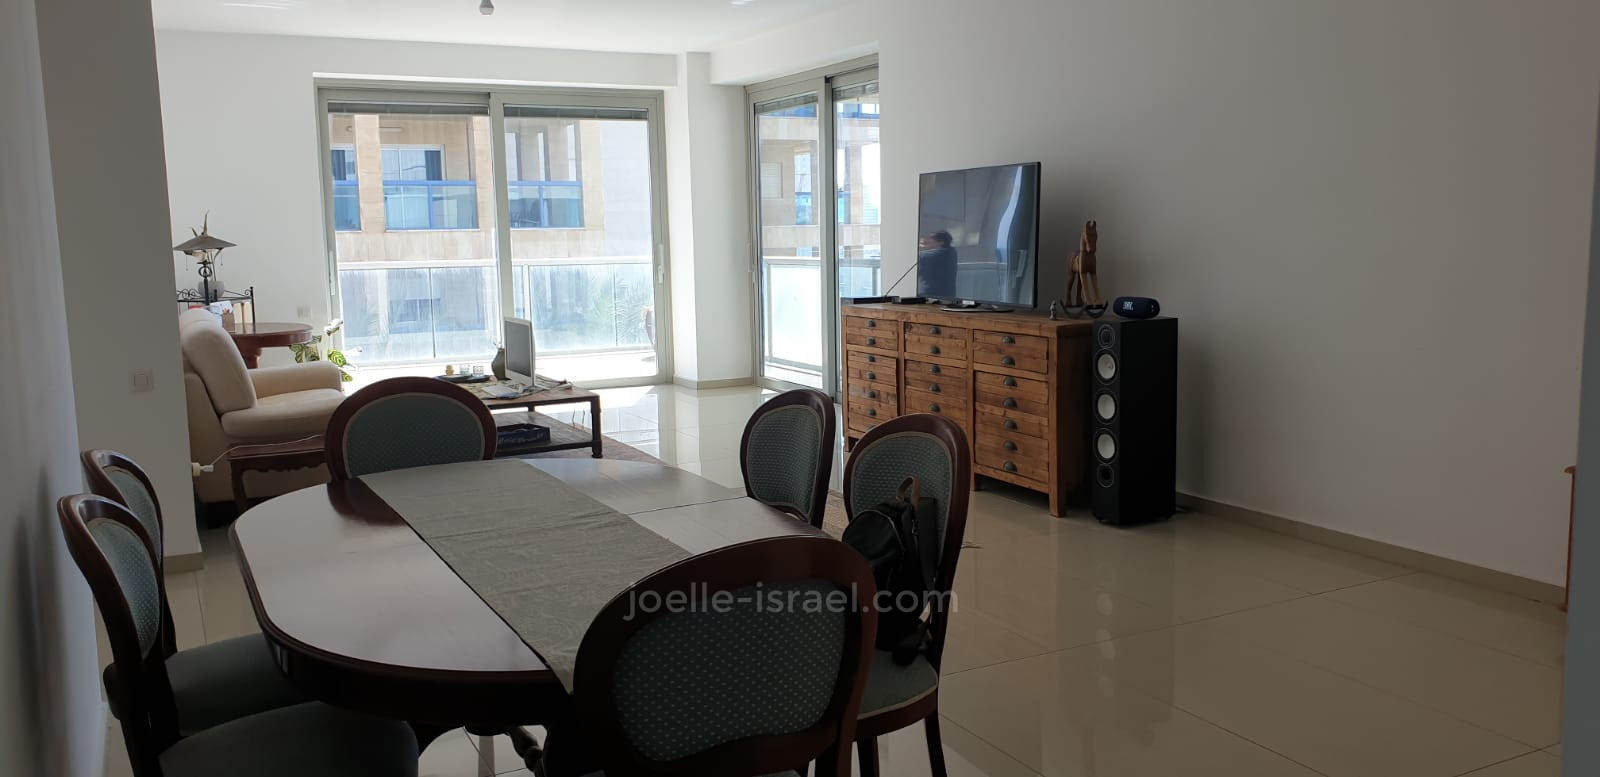 Appartement 3 pièces Netanya Agamim 316-IBL-1581